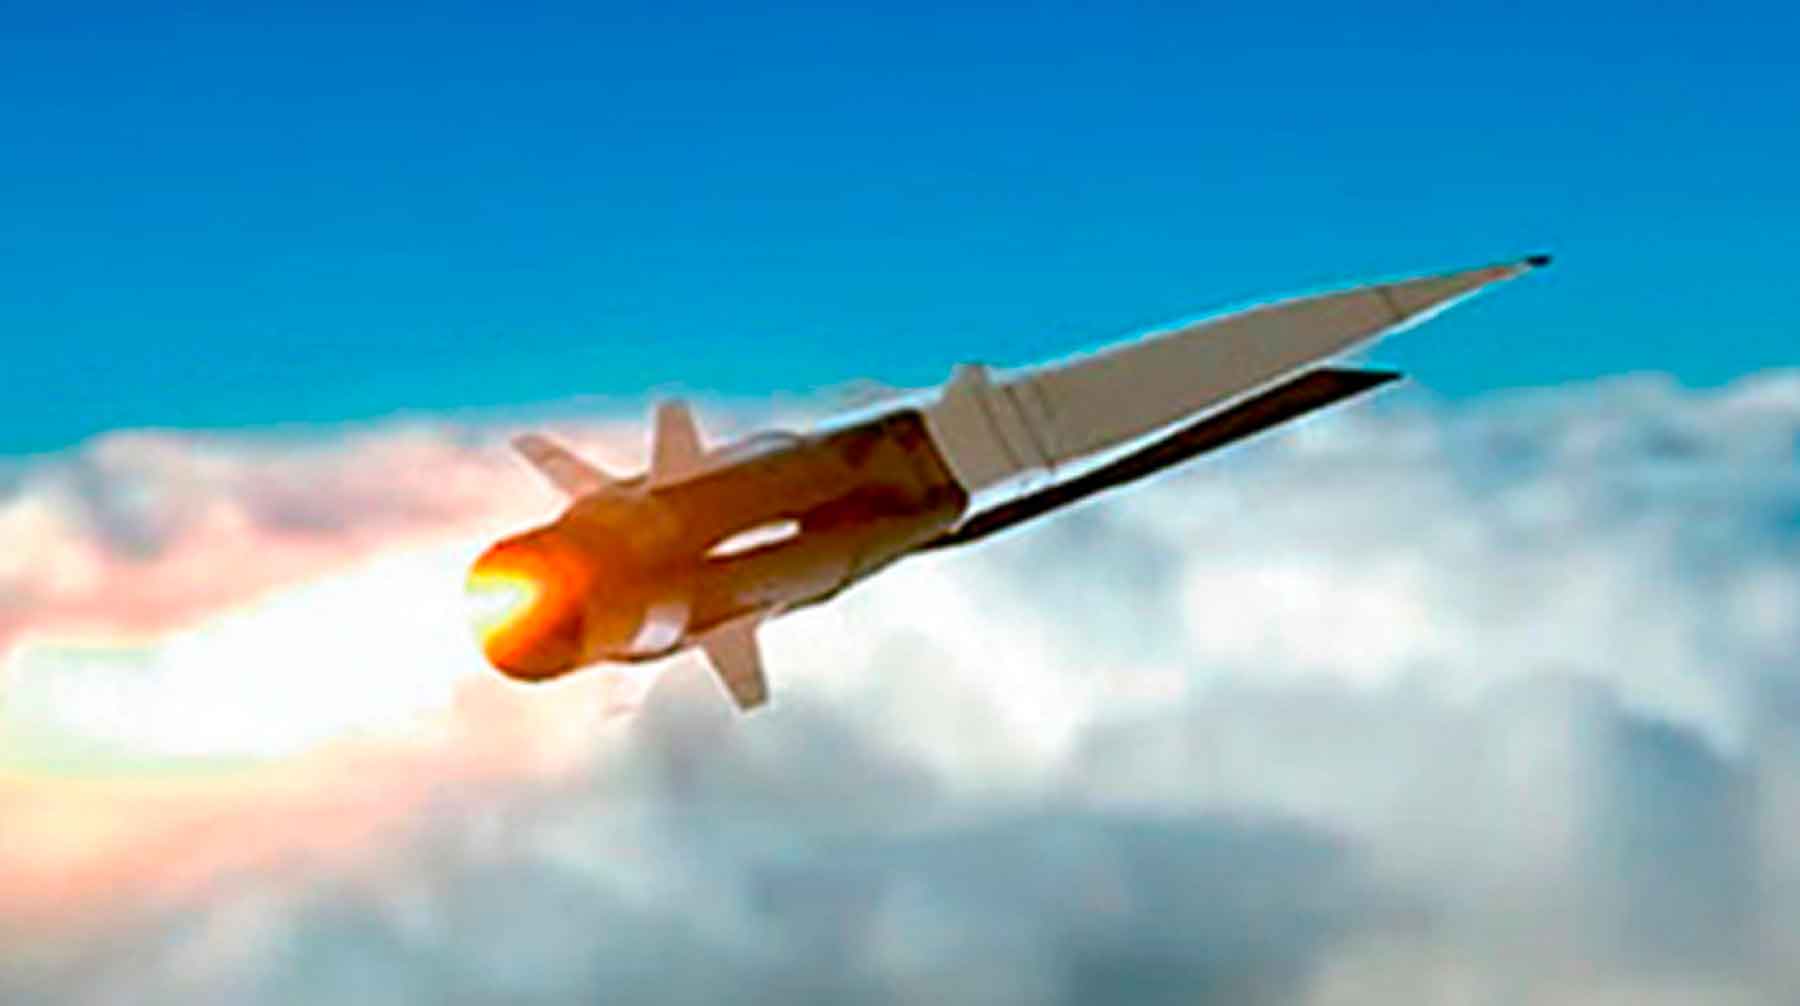 Дальность полета новой ракеты превысила 500 километров Кадр: © youtube.com / Минобороны России